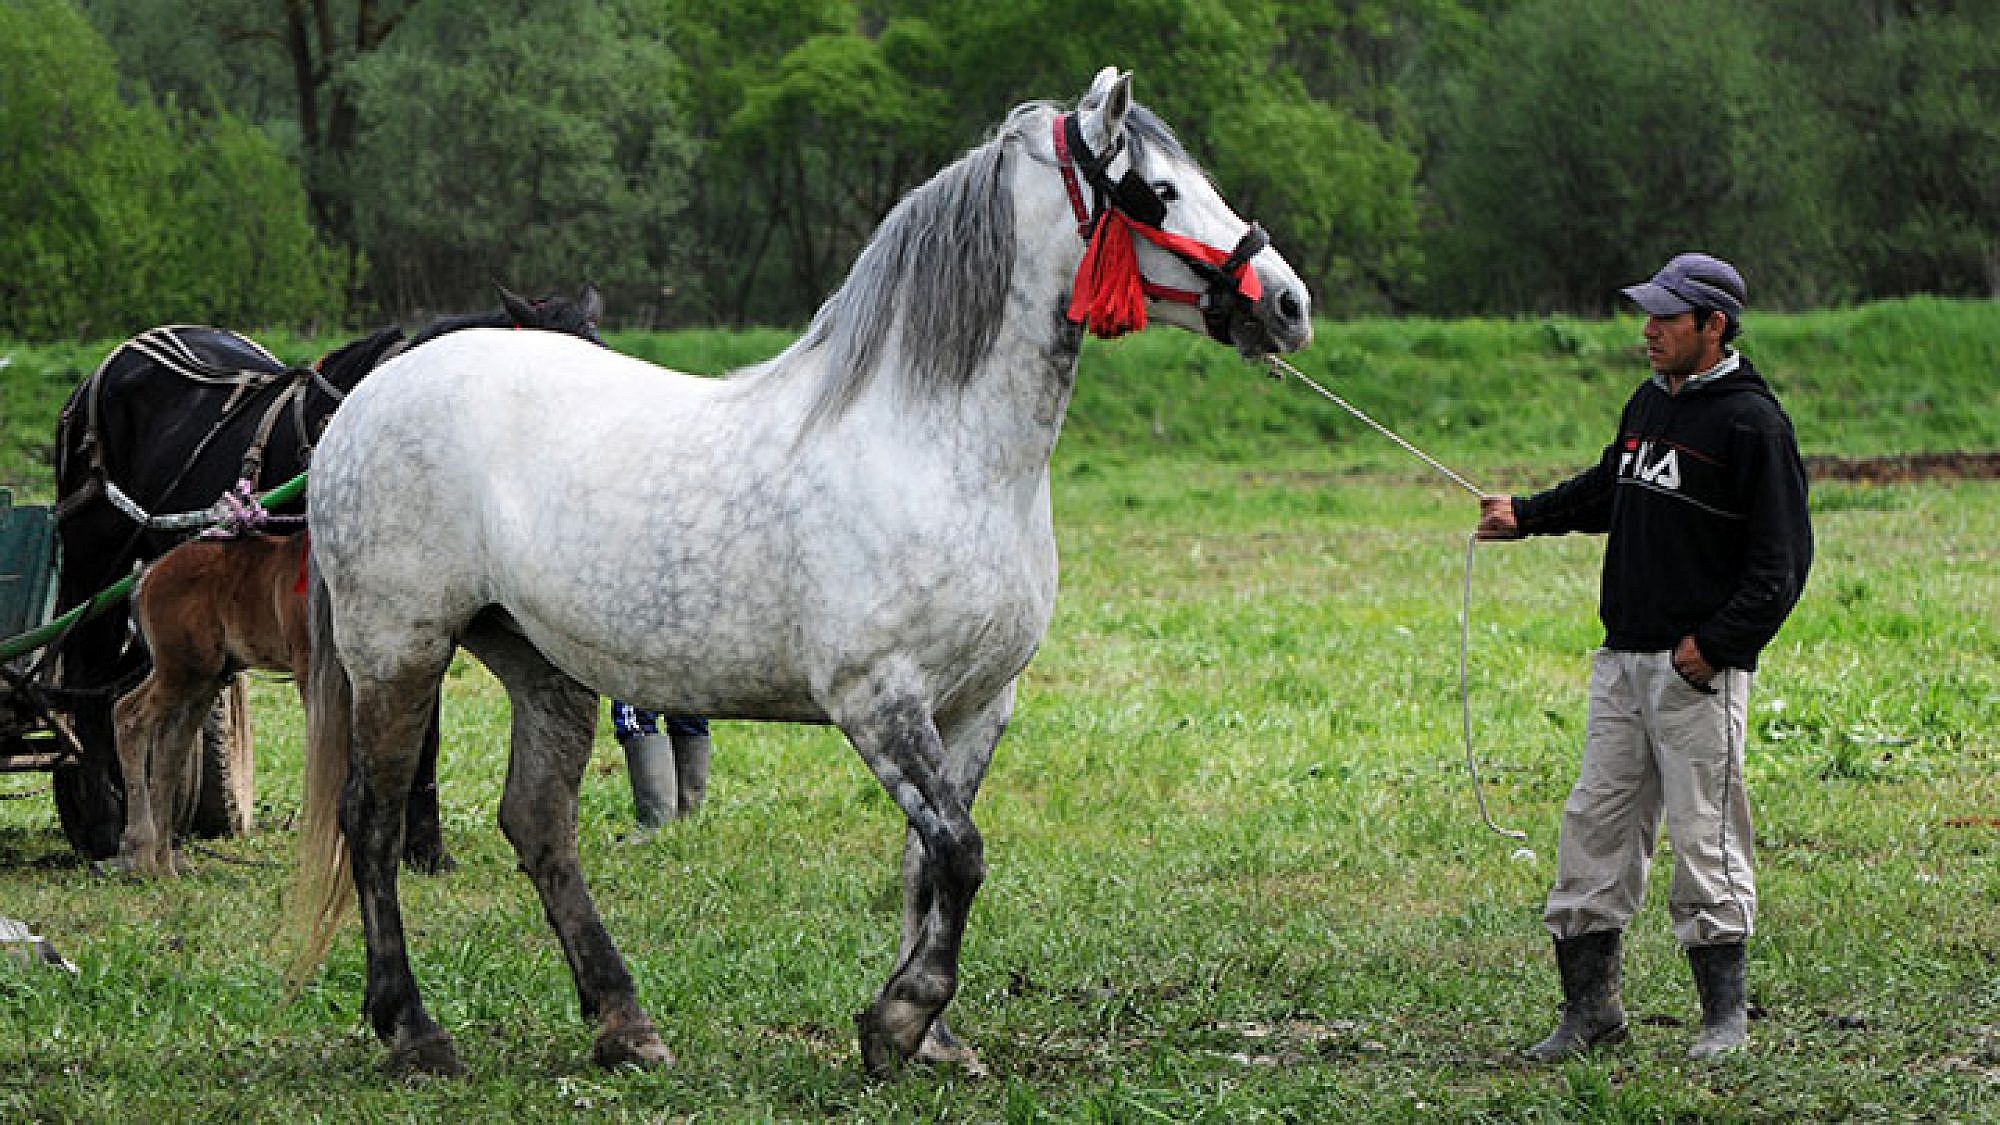 שוק הבהמות ליד הכפר ביירטן. צועני צעיר בוחן בקפידה סוס לבן שאותו הוא מעוניין לרכוש | צילום: איציק מרום